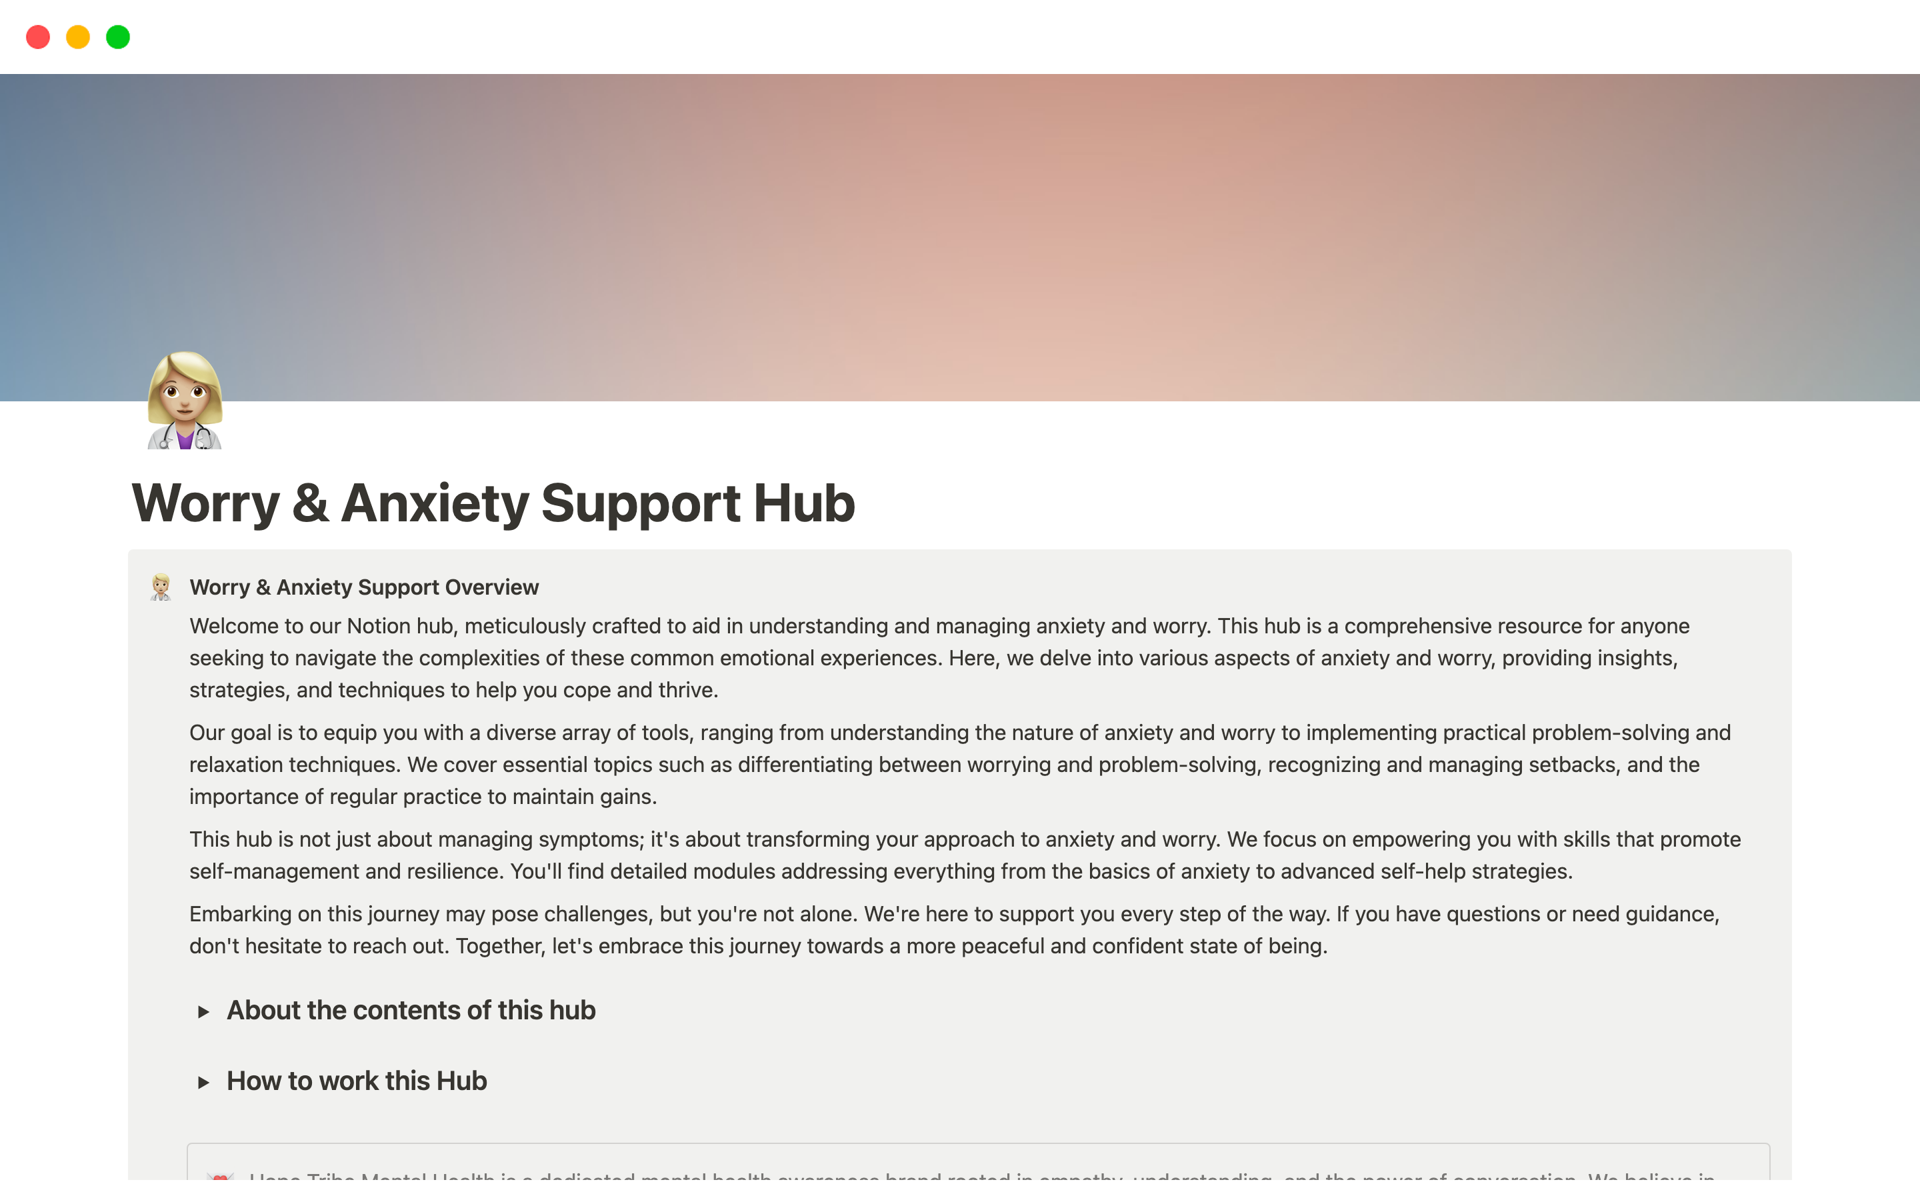 Vista previa de una plantilla para Worry & Anxiety Support Hub